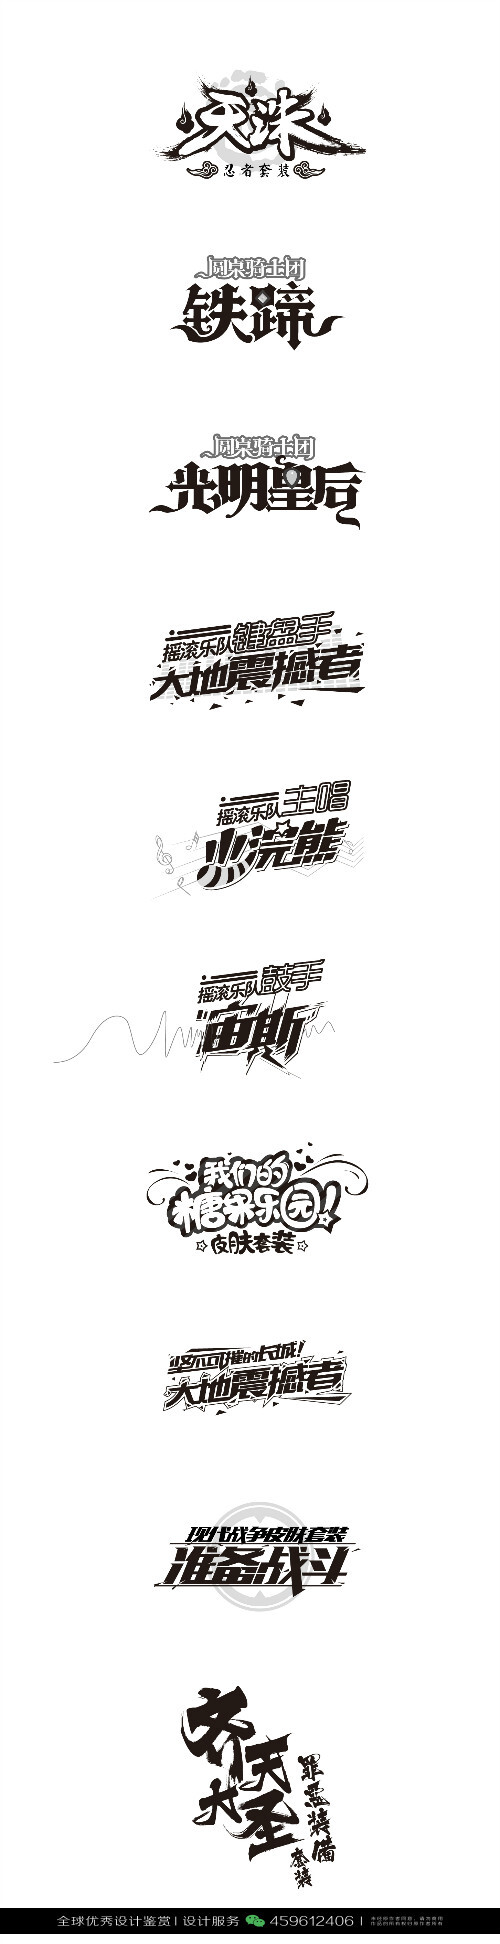 字体设计汉字中文优秀logo设计标志品牌设计作品 1557 堆糖 美图壁纸兴趣社区